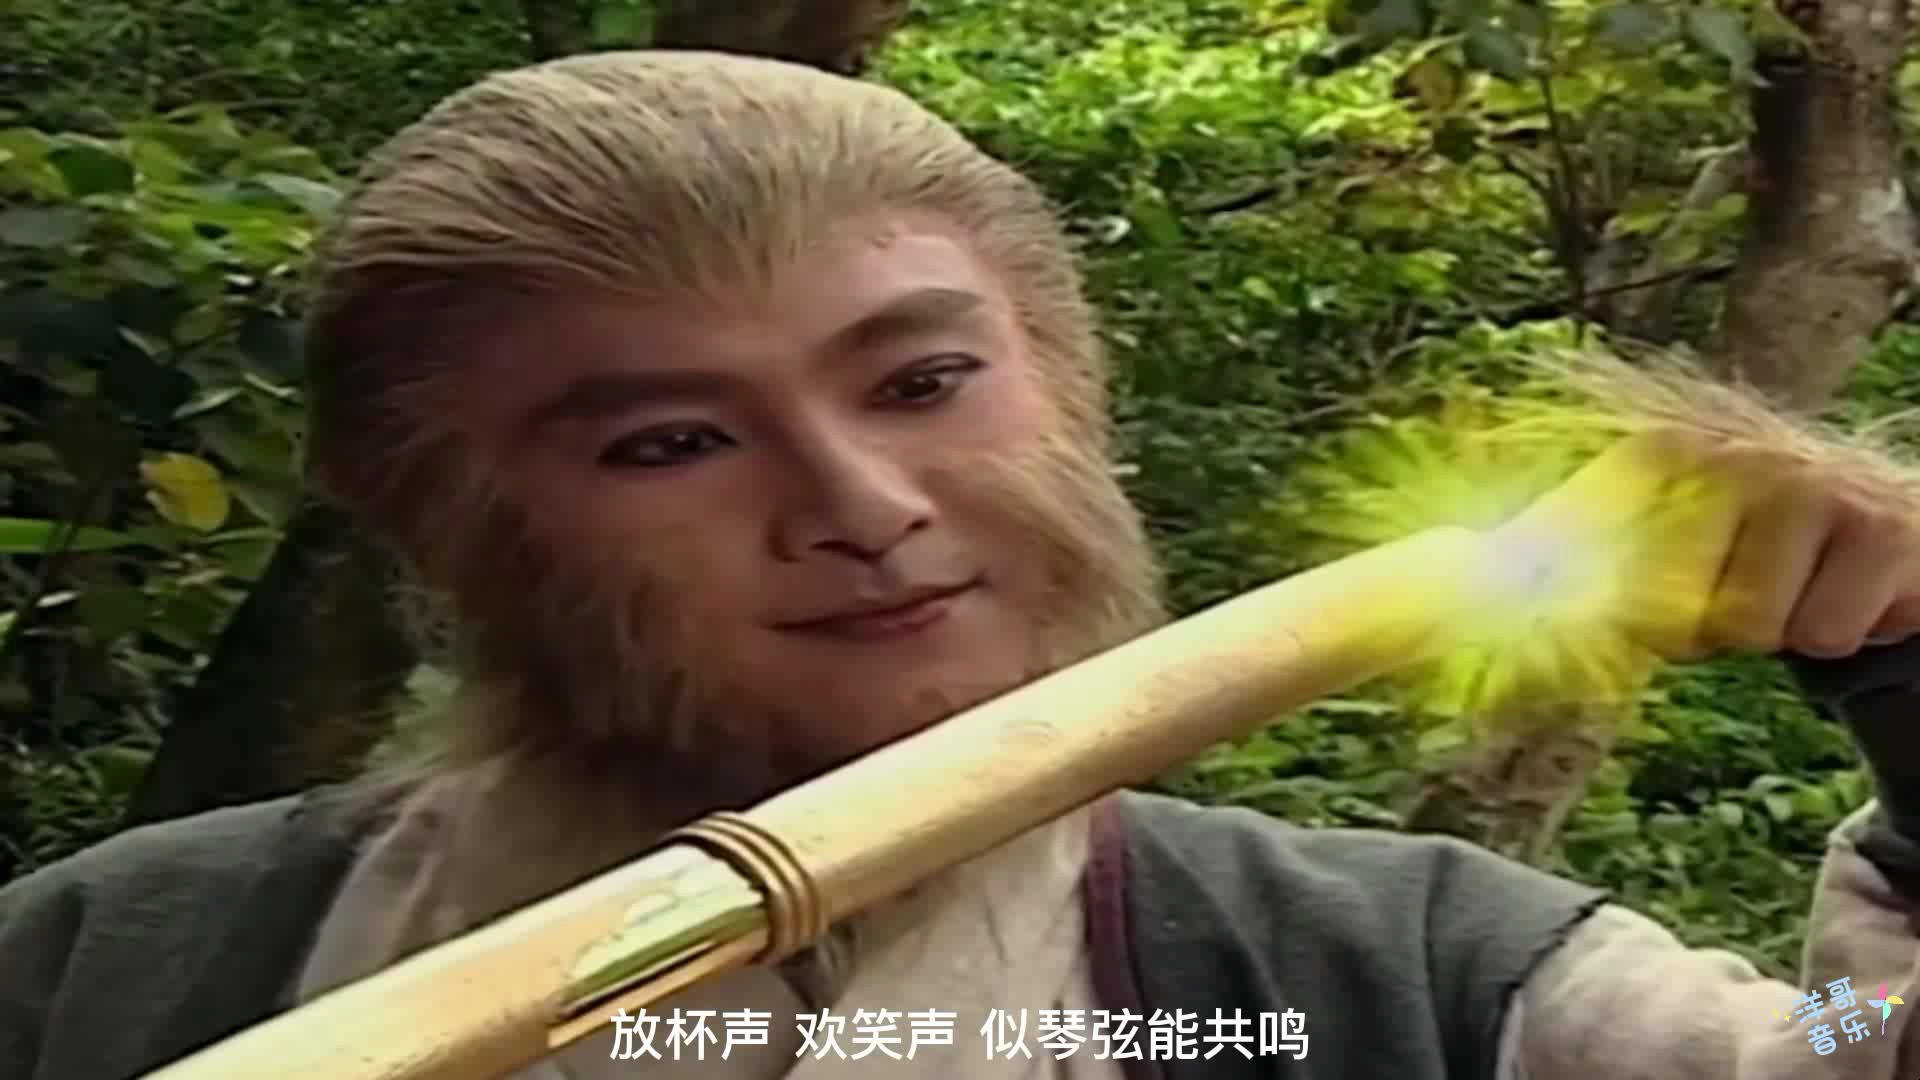 电视剧《tvb西游记Ⅰ》插曲《把酒狂歌》张卫健(1996年经典歌曲)